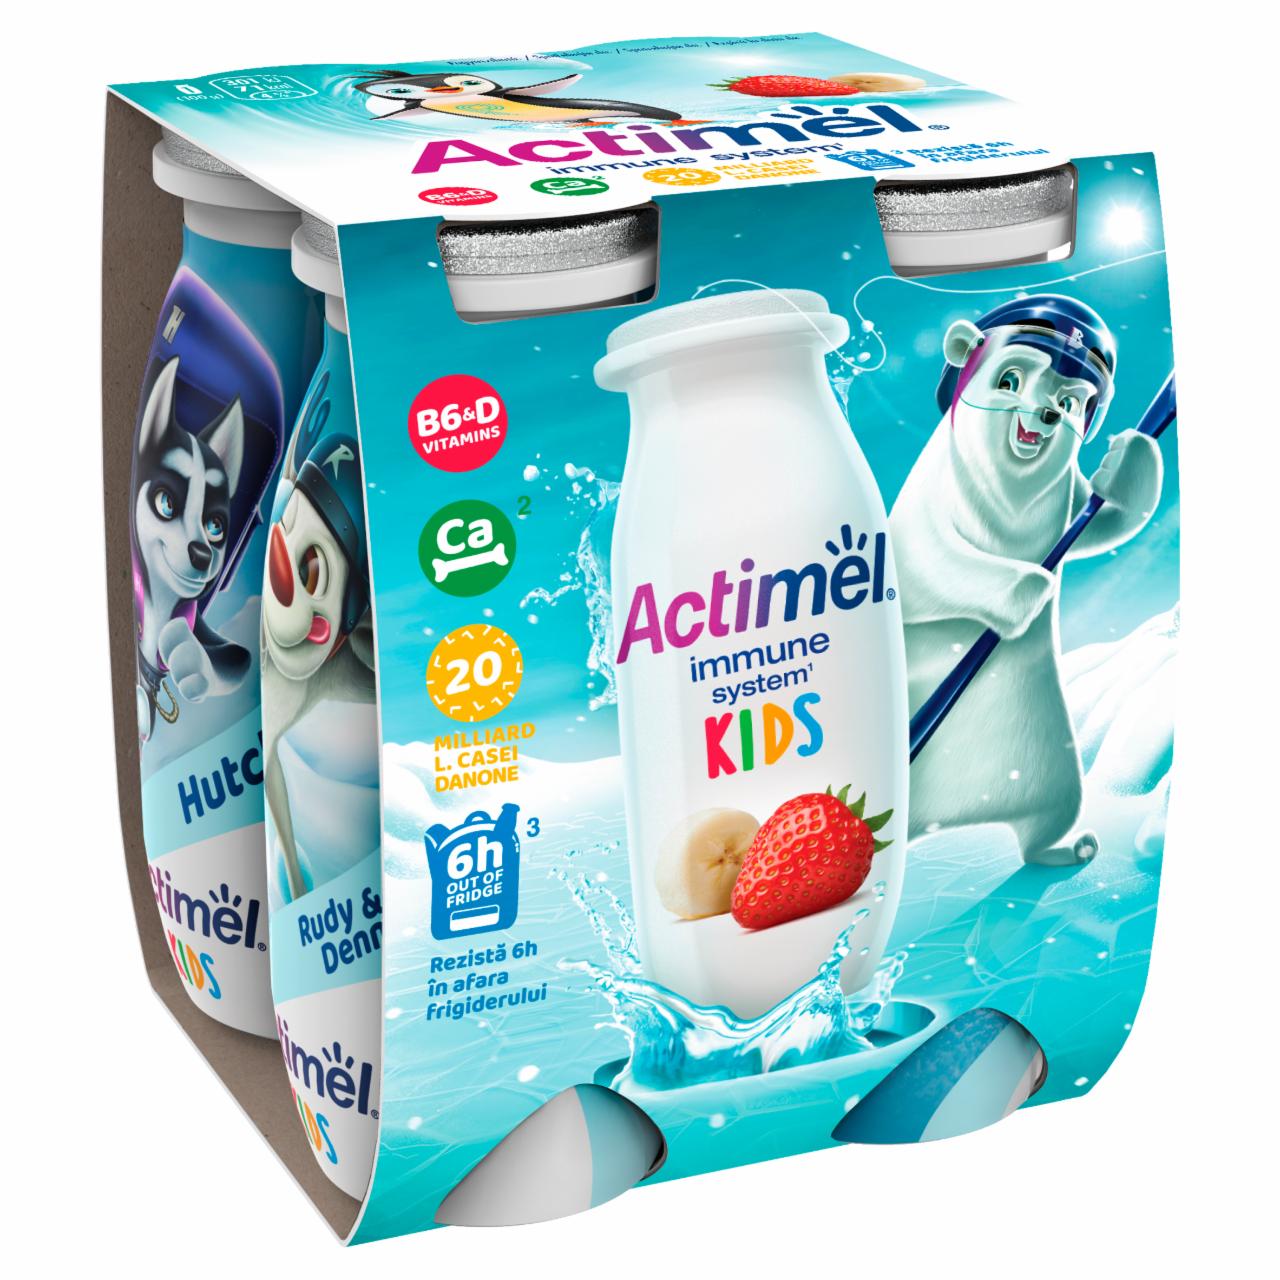 Képek - Danone Actimel Kids zsírszegény, élőflórás, eper-banánízű joghurtital 4 x 100 g (400 g)